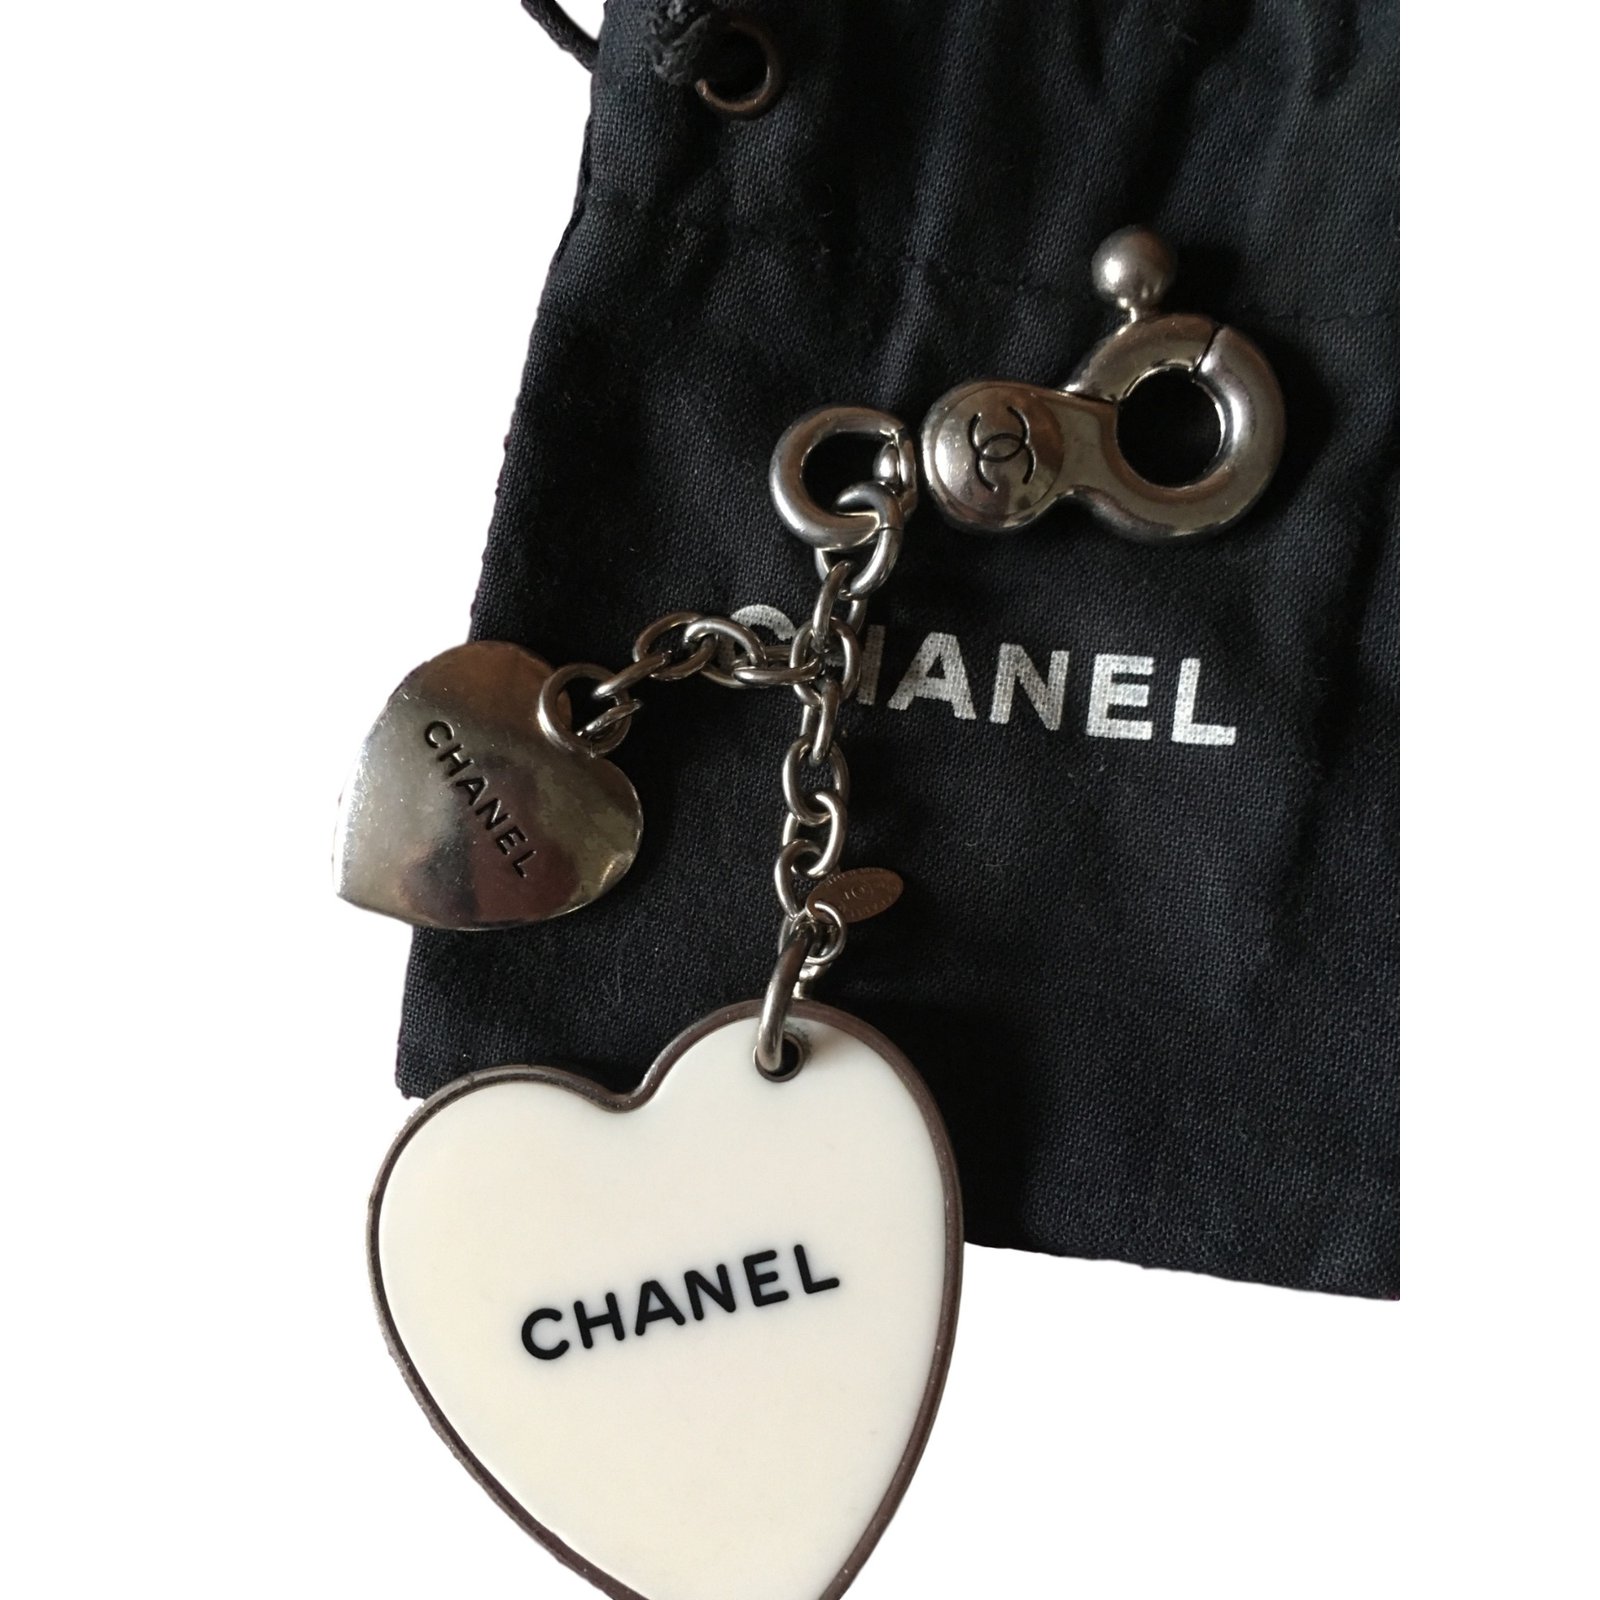 Chanel keychain - Gem